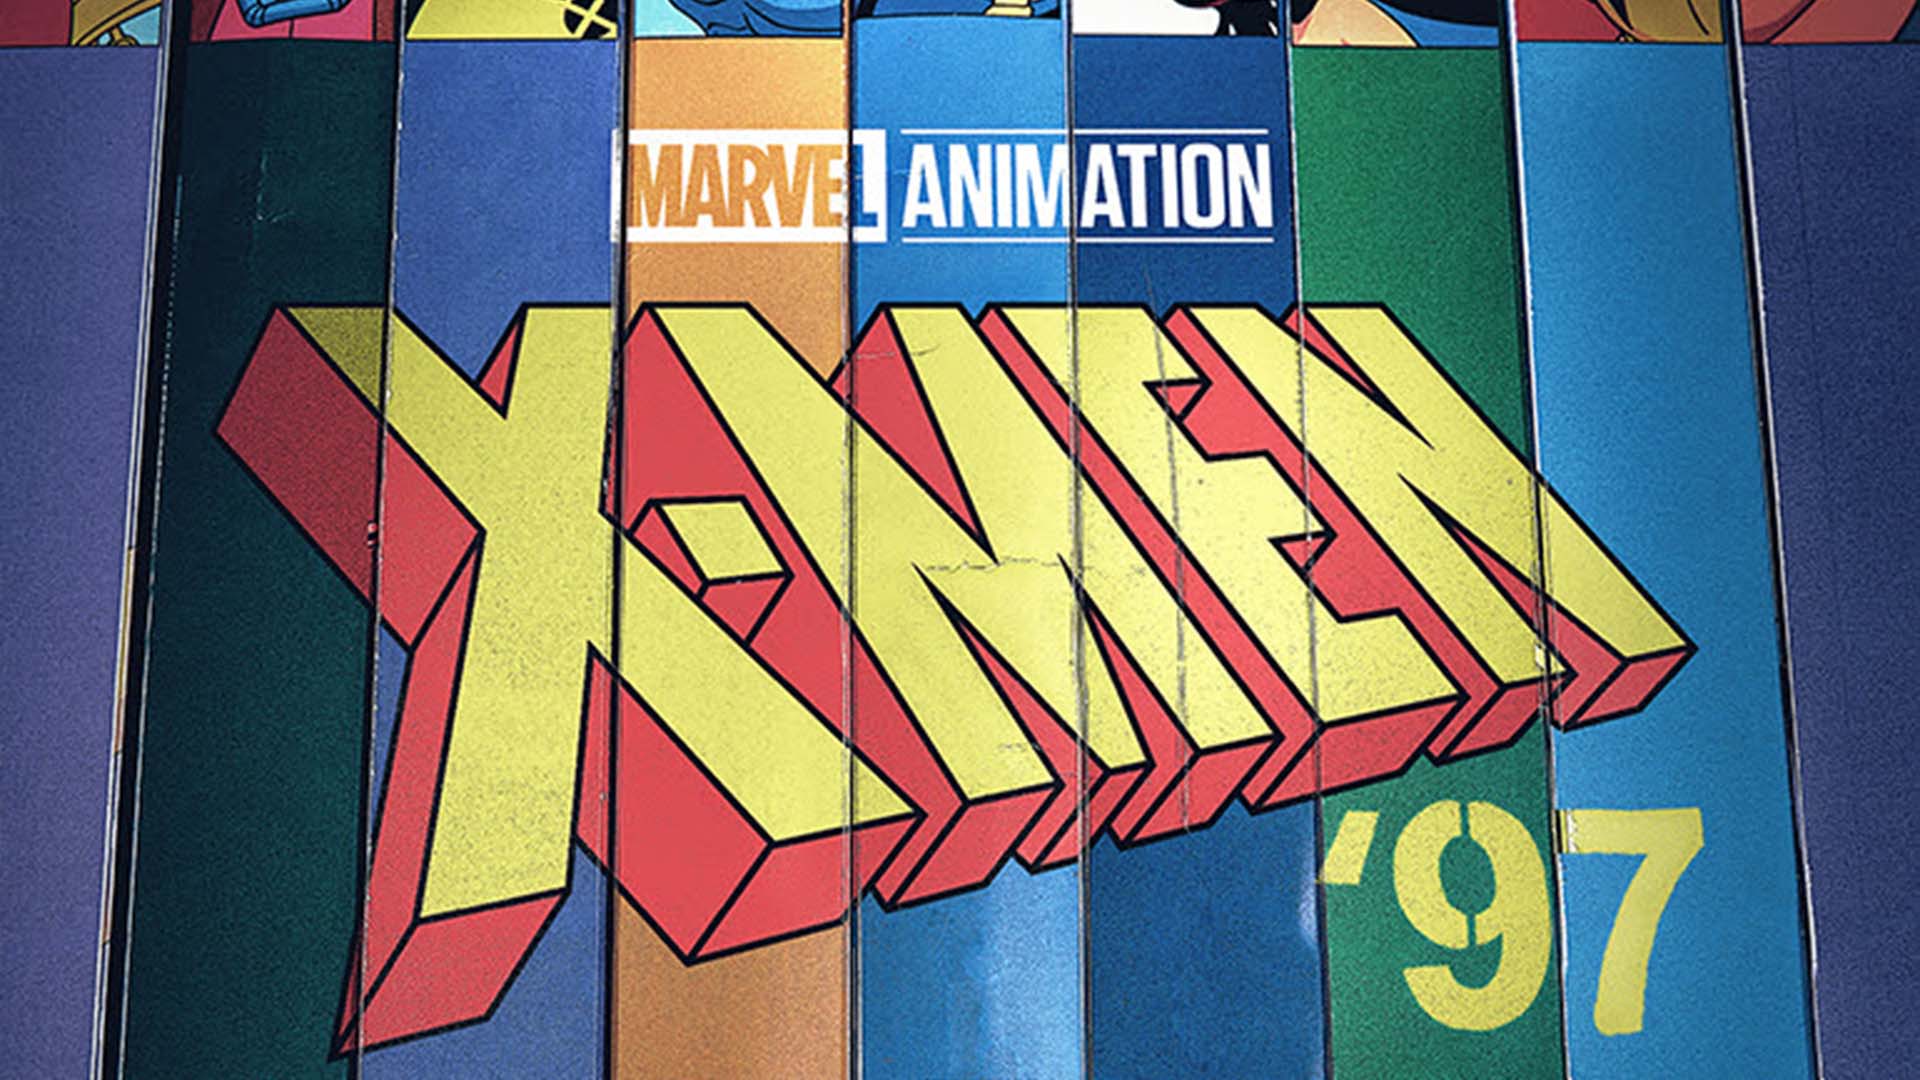 Le visualizzazioni di X-Men ’97 da record su Disney+